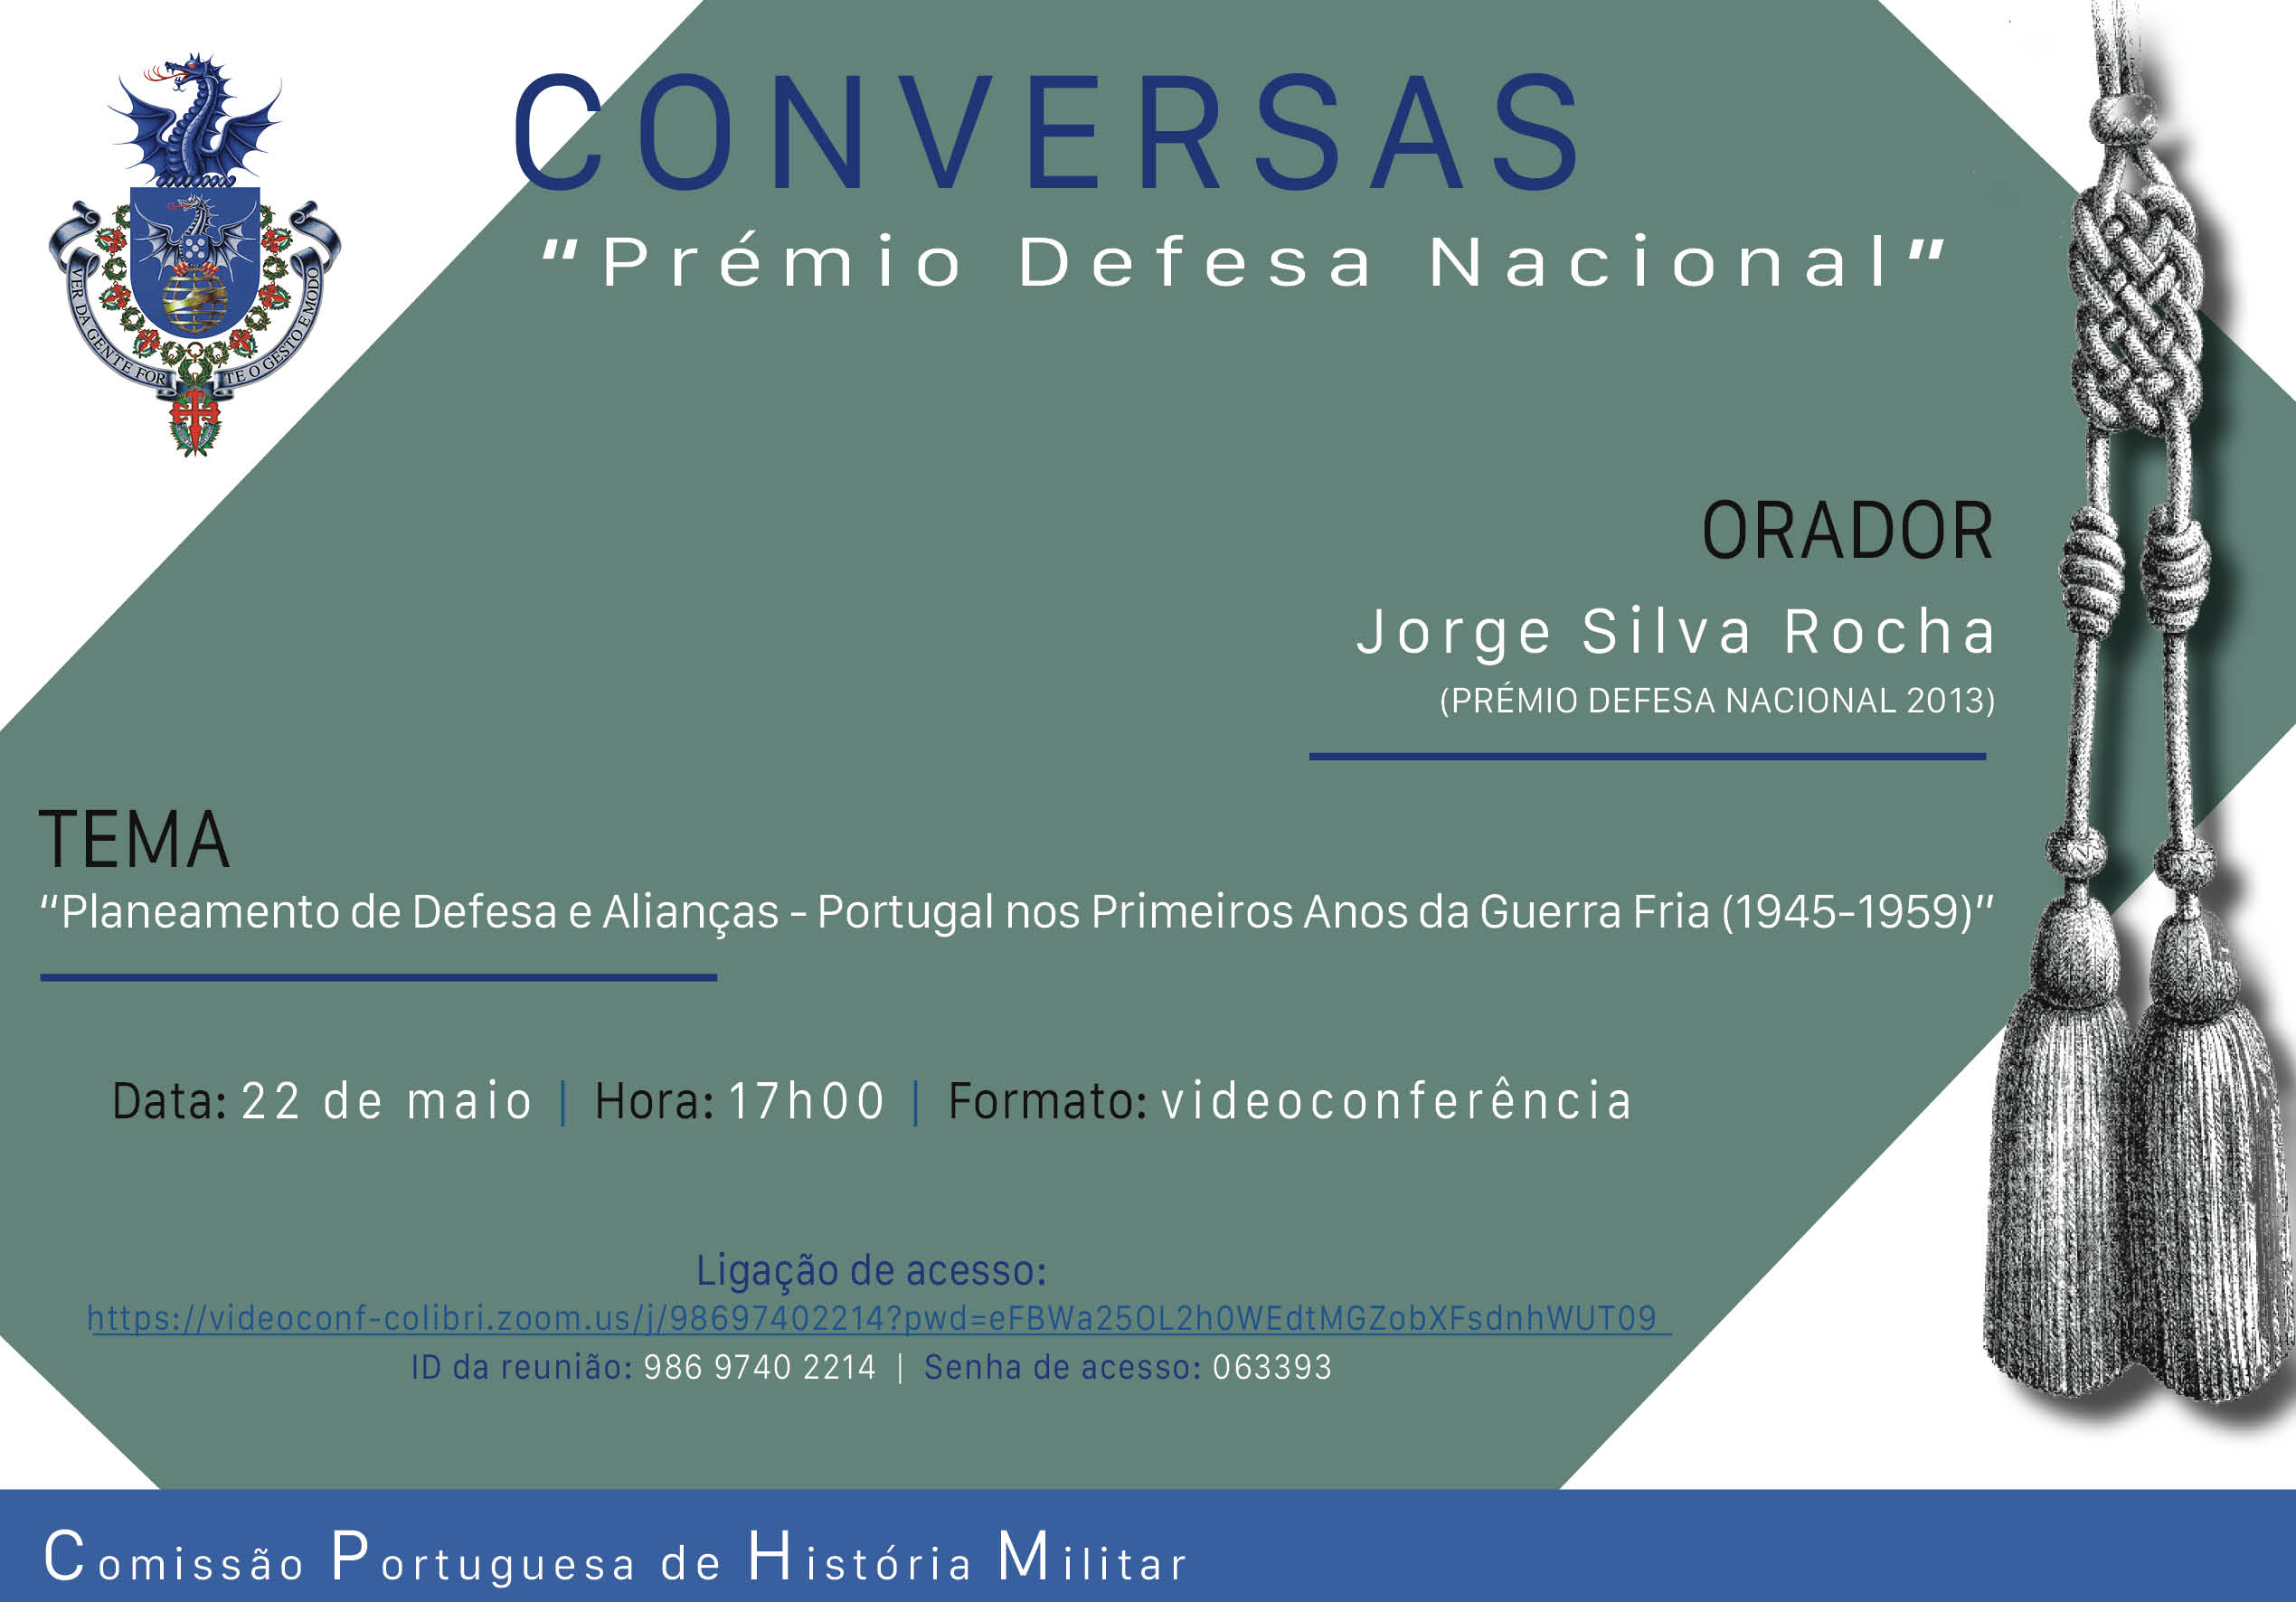 cartaz conversas PDN_Jorge Silva Rocha.jpg